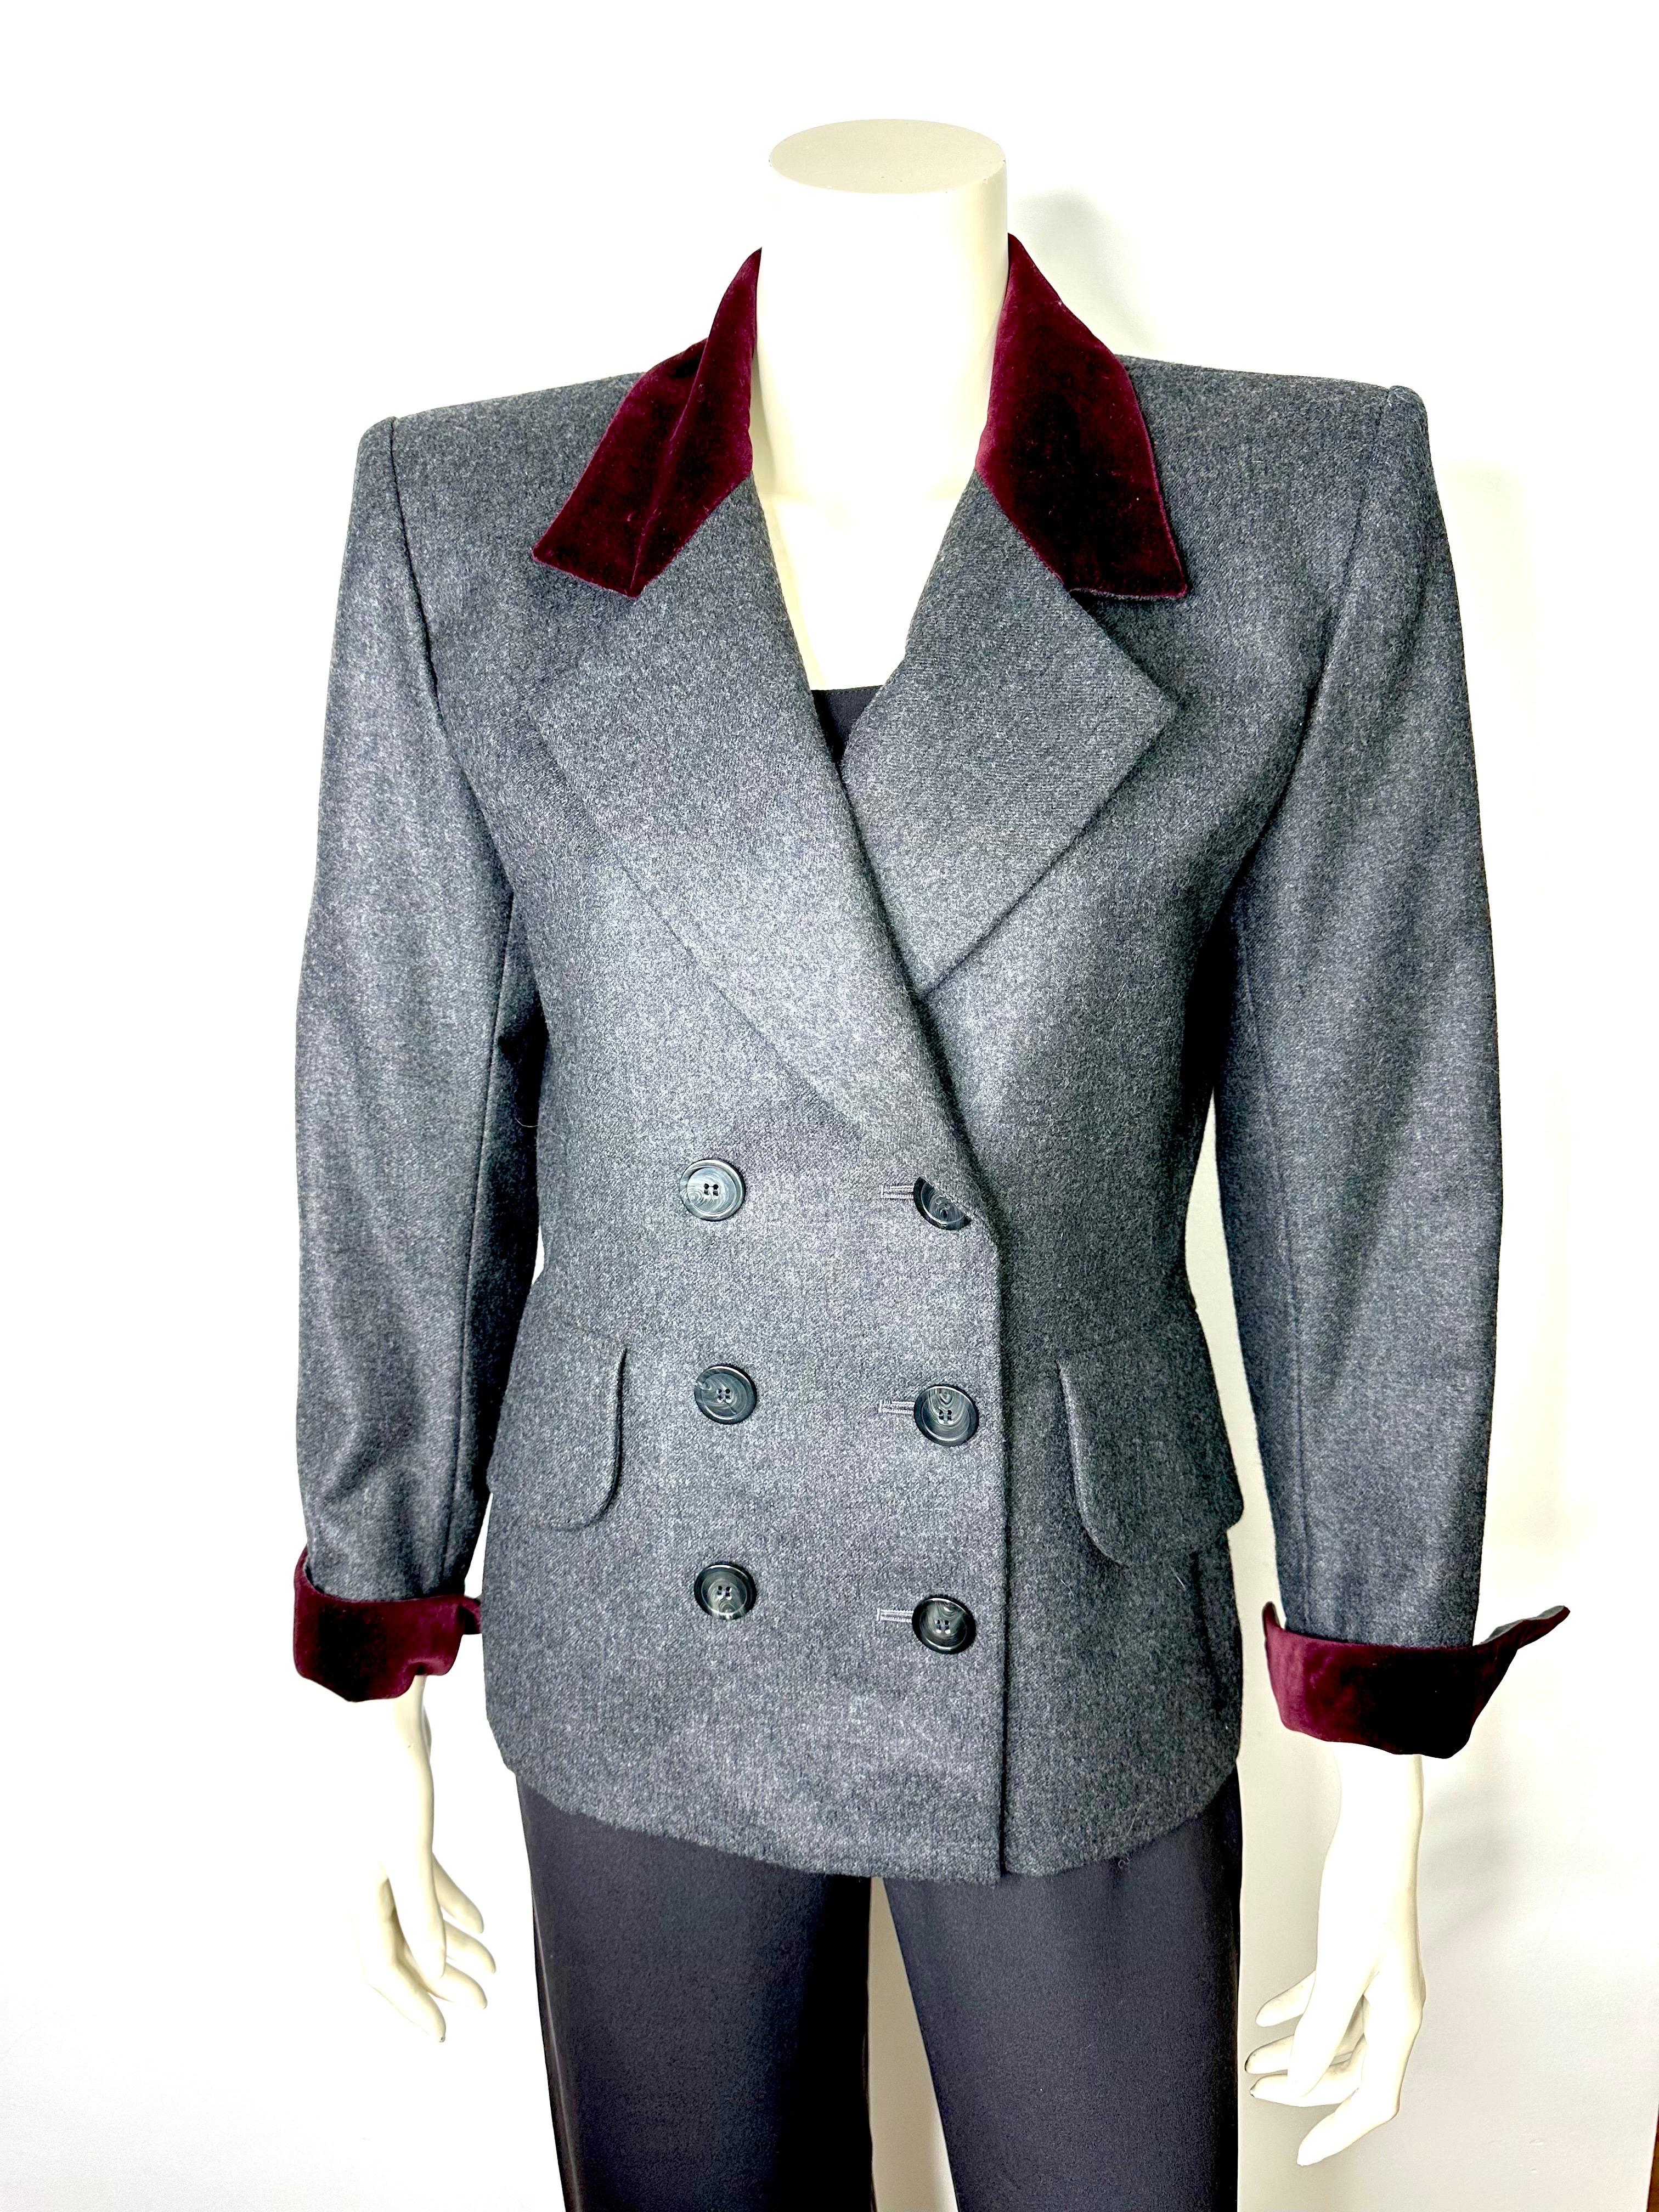 Vintage Yves saint Laurent variation blazer from 1990, slim-fit, laine grise avec col et poignets en velours bordeaux.
Le blazer est doté d'un double boutonnage et de grandes poches à rabat.
Taille 40, se référer aux mesures
Largeur d'épaule